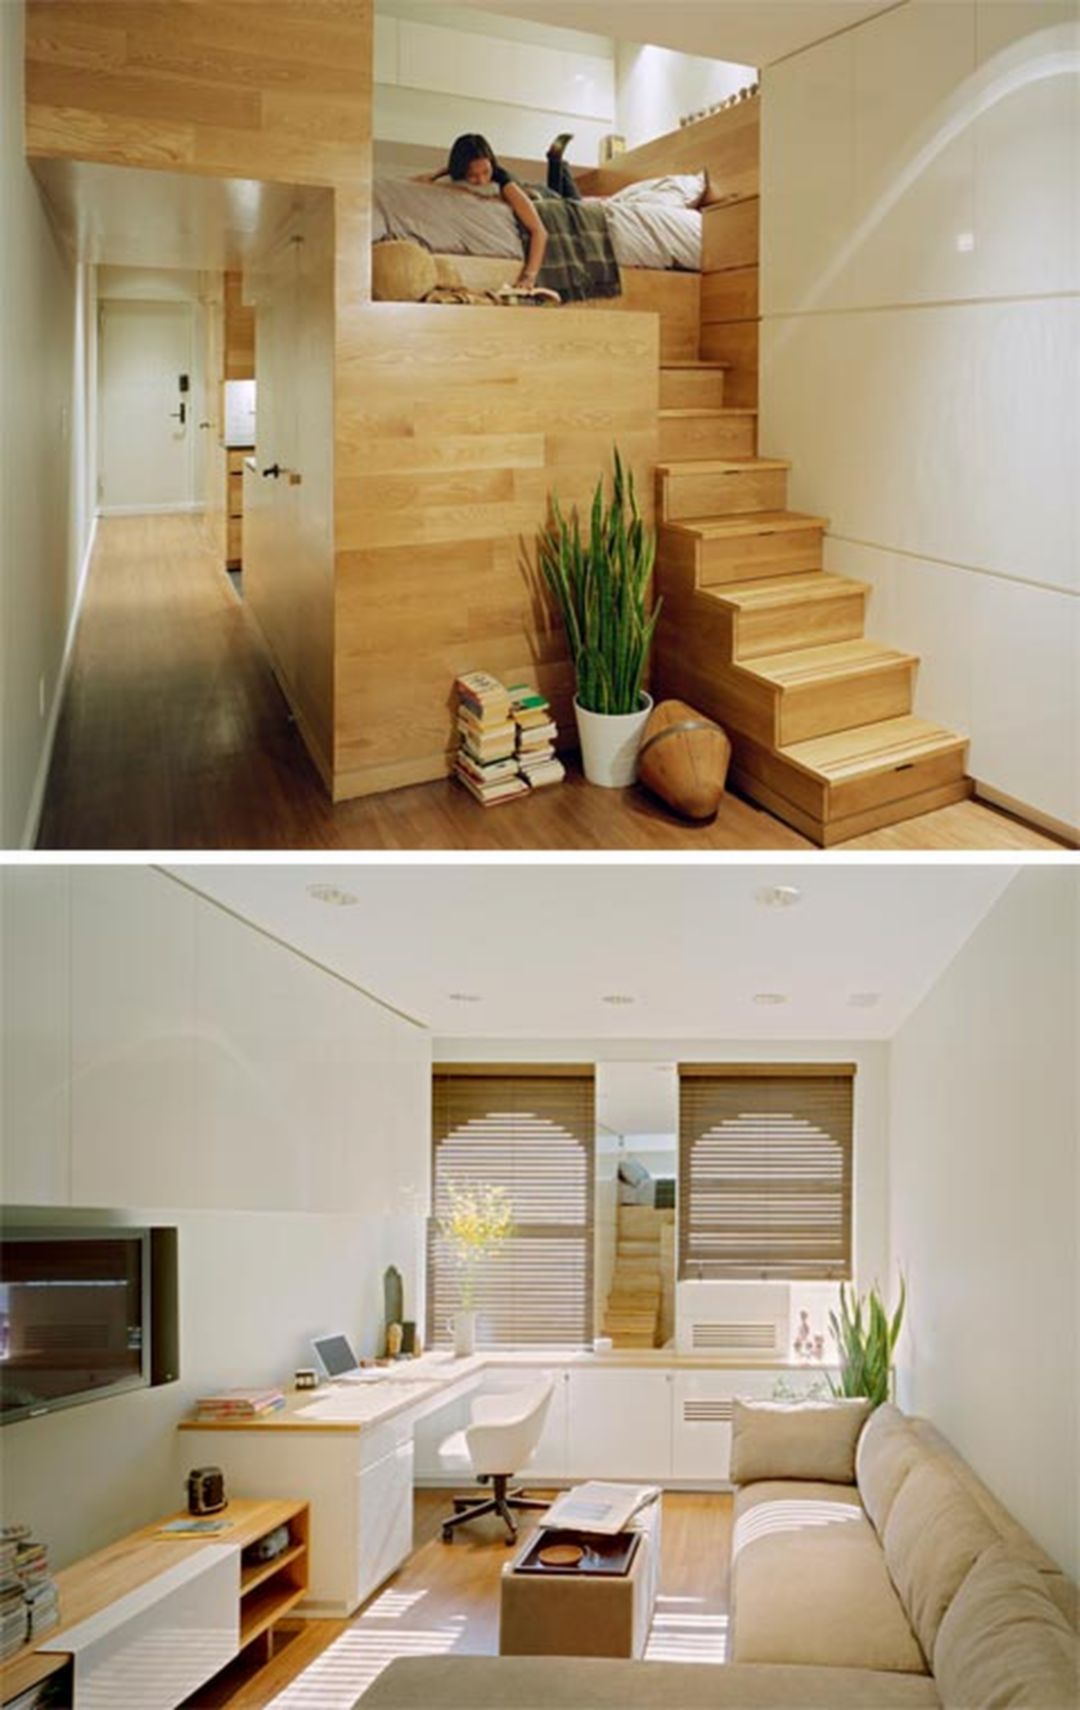 Home Interior Design Ideas For Small - Home Design Ideas